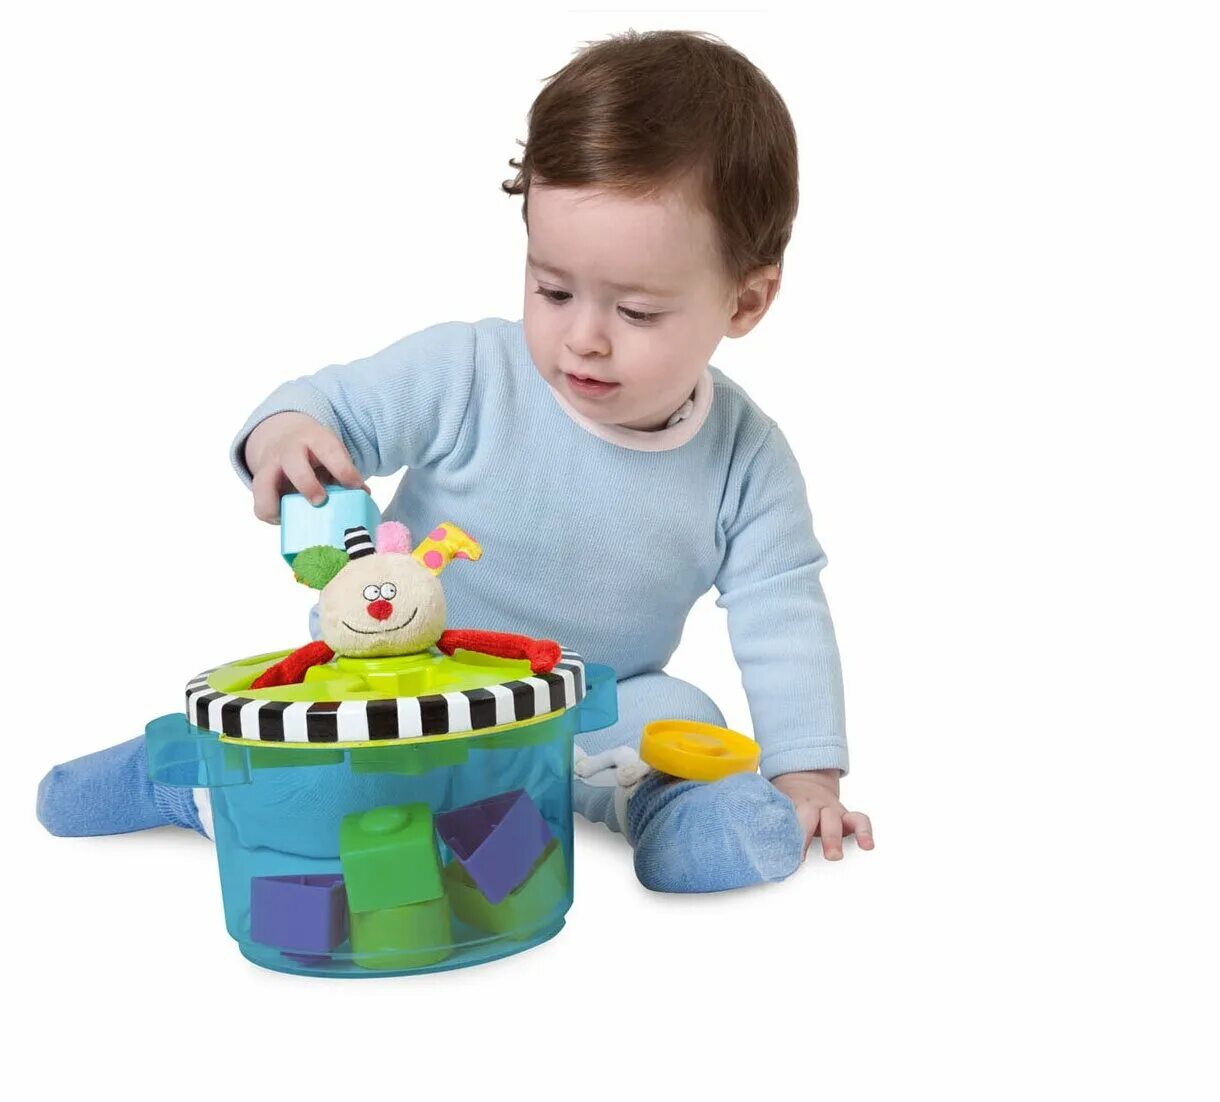 Музыкальная игрушка 2. Игрушки для детей. Музыкальная игрушка для малышей. Музыкальный сортер. Музыкальные игрушки для малышей от 1 года.